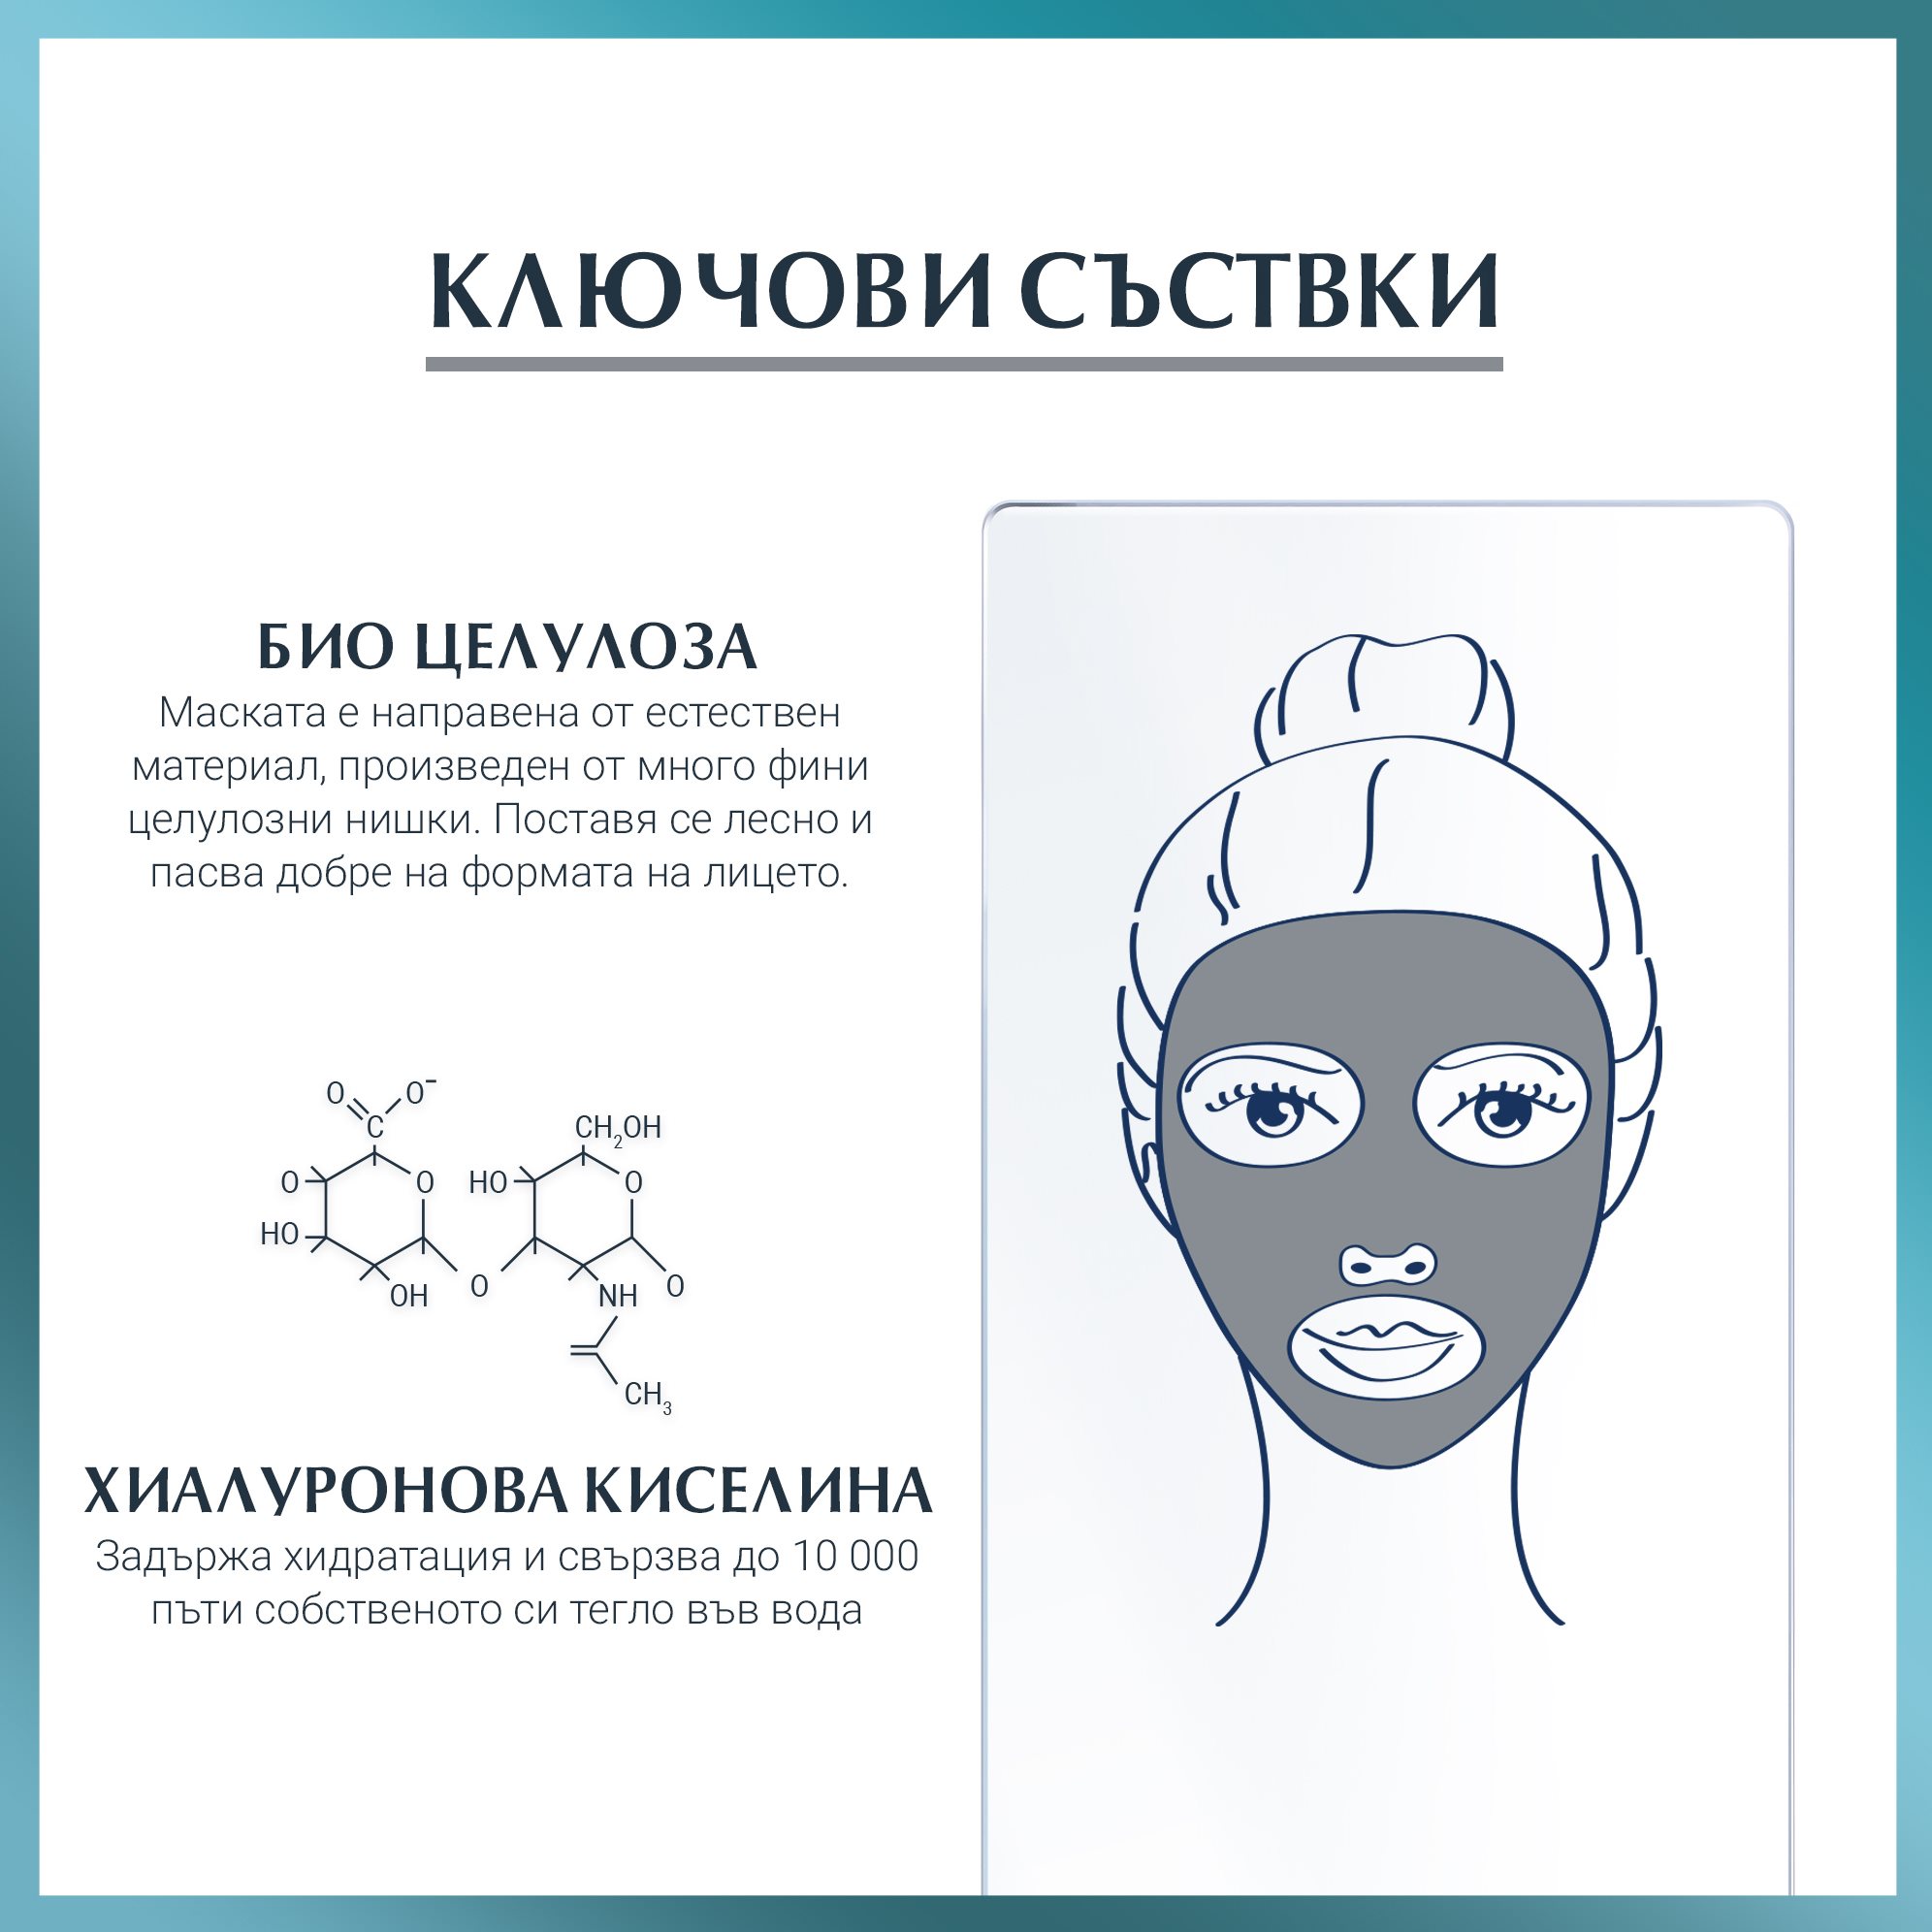 Ключови съставки на хидратираща маска с хиалуронова киселина